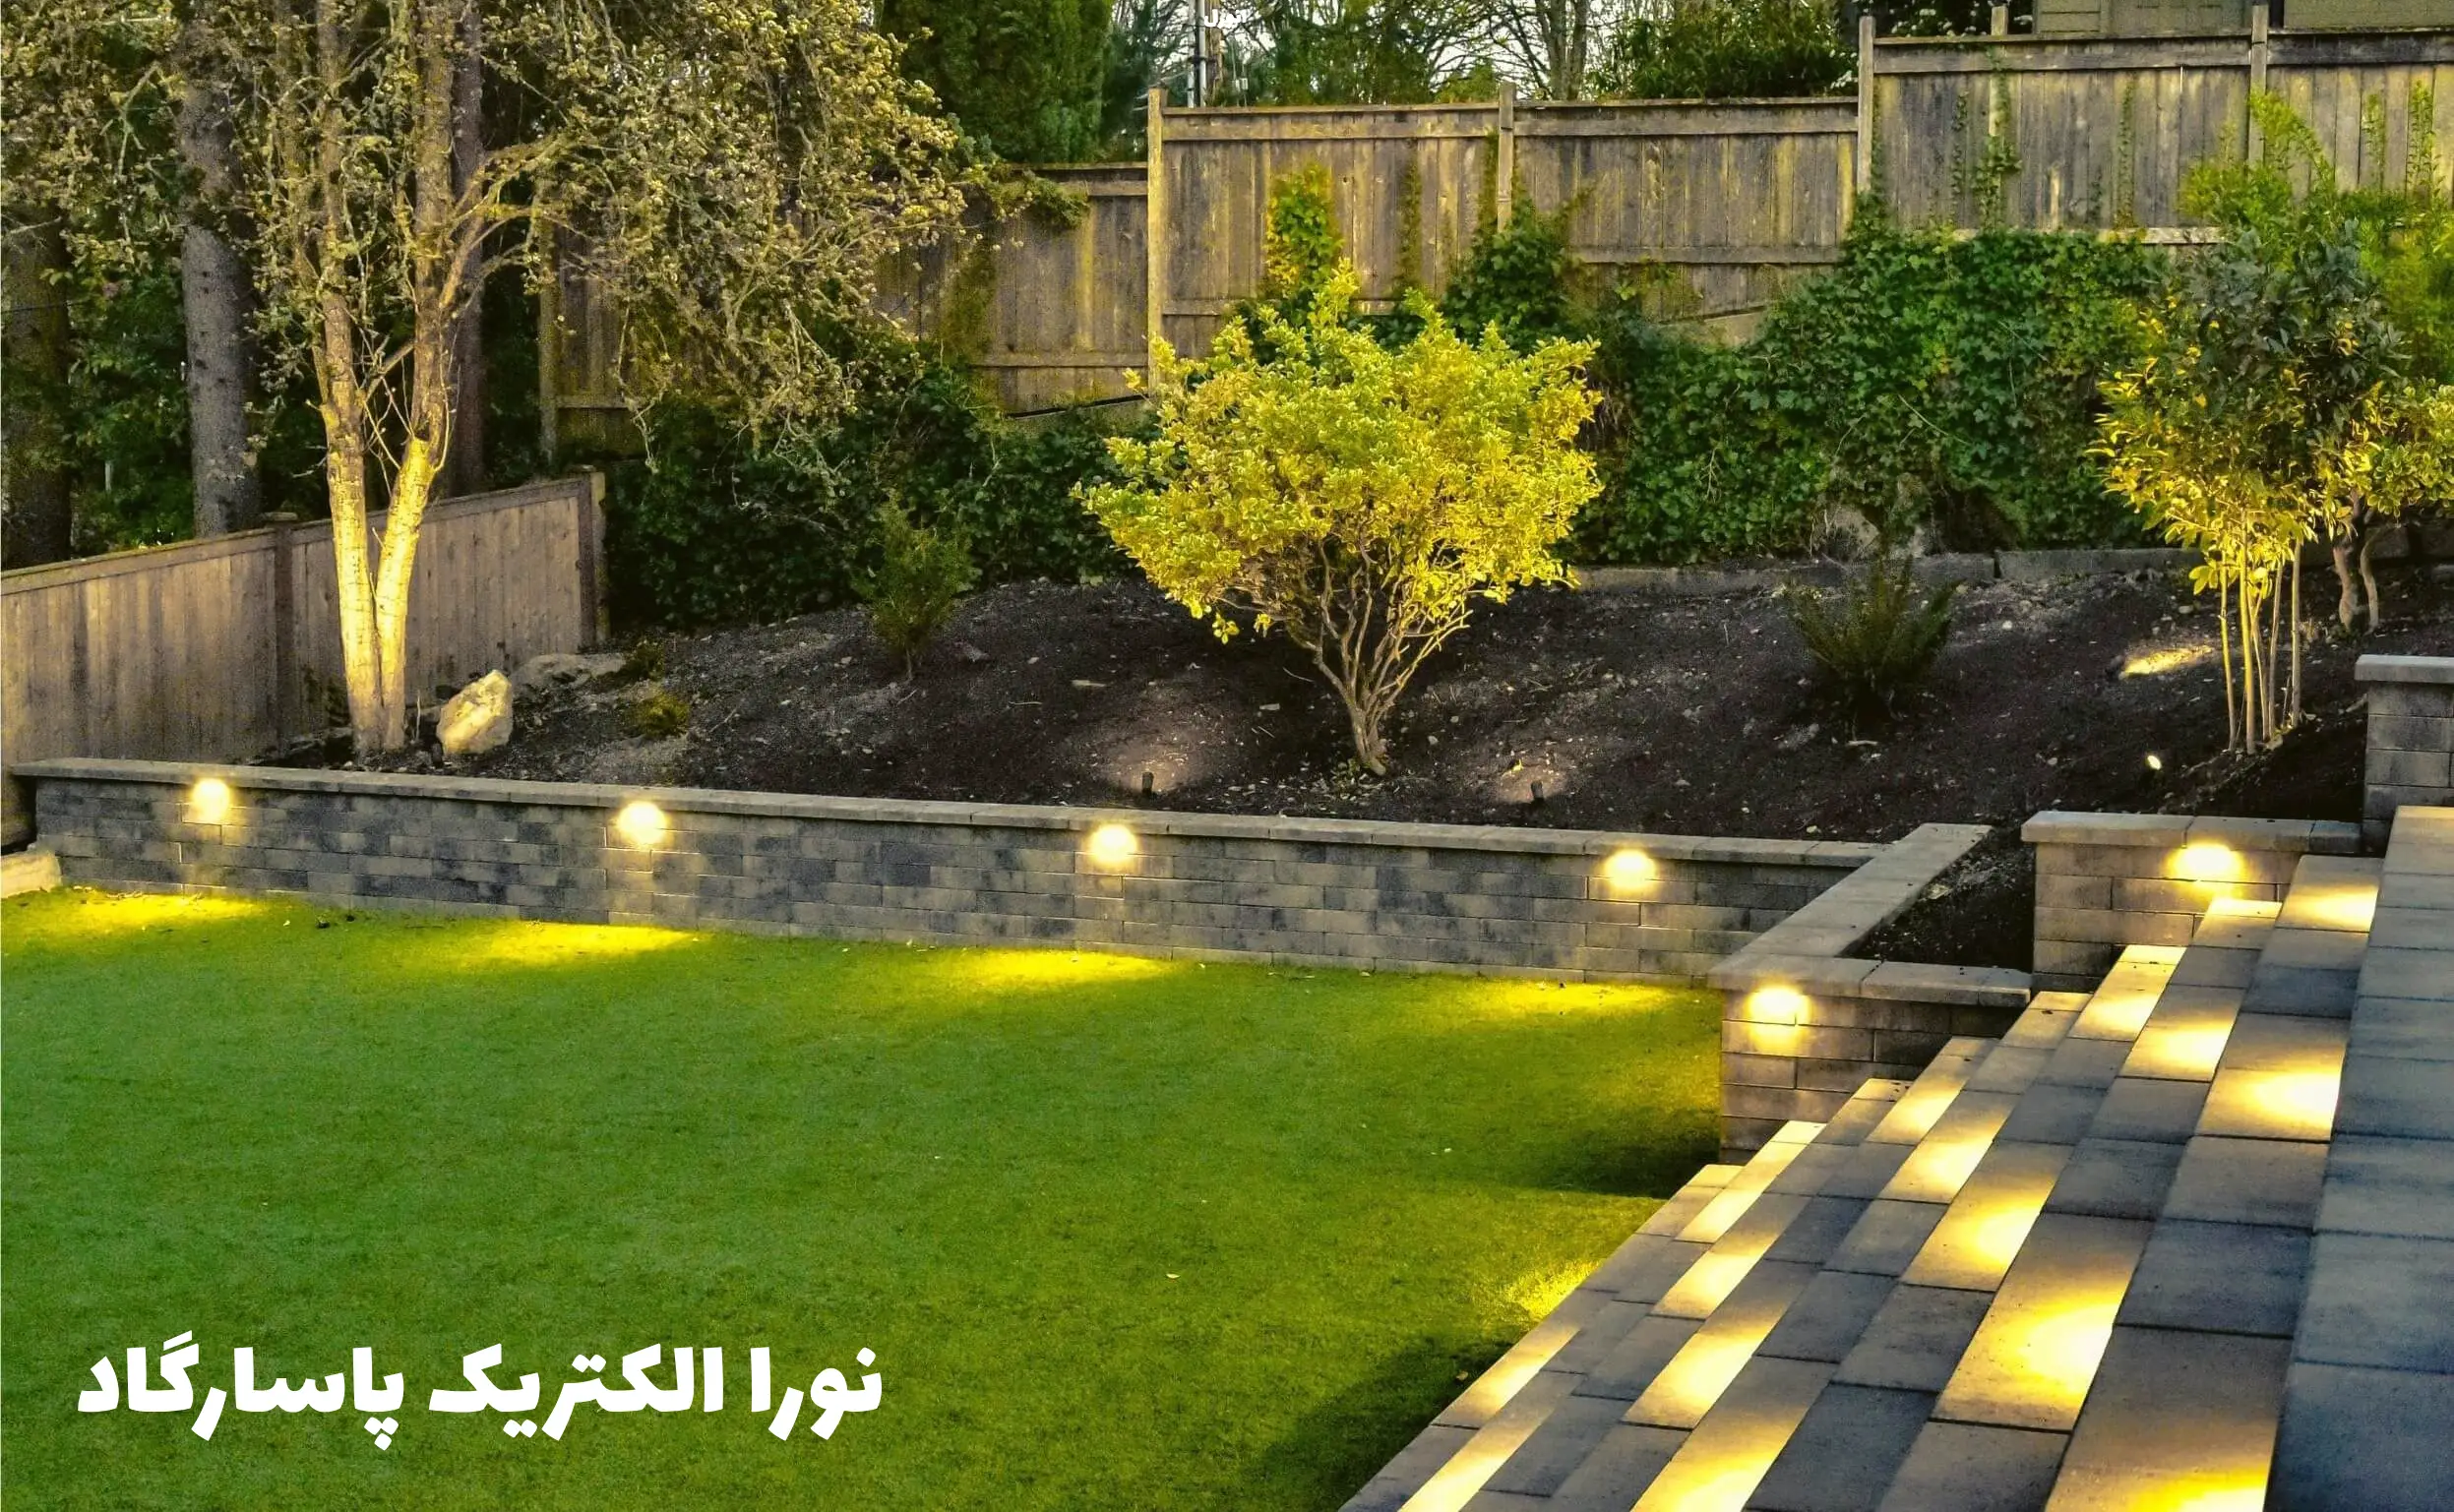 1- انتخاب درست منبع نوری برای ایجاد روشنایی در باغ شخصی، ویلایی و...